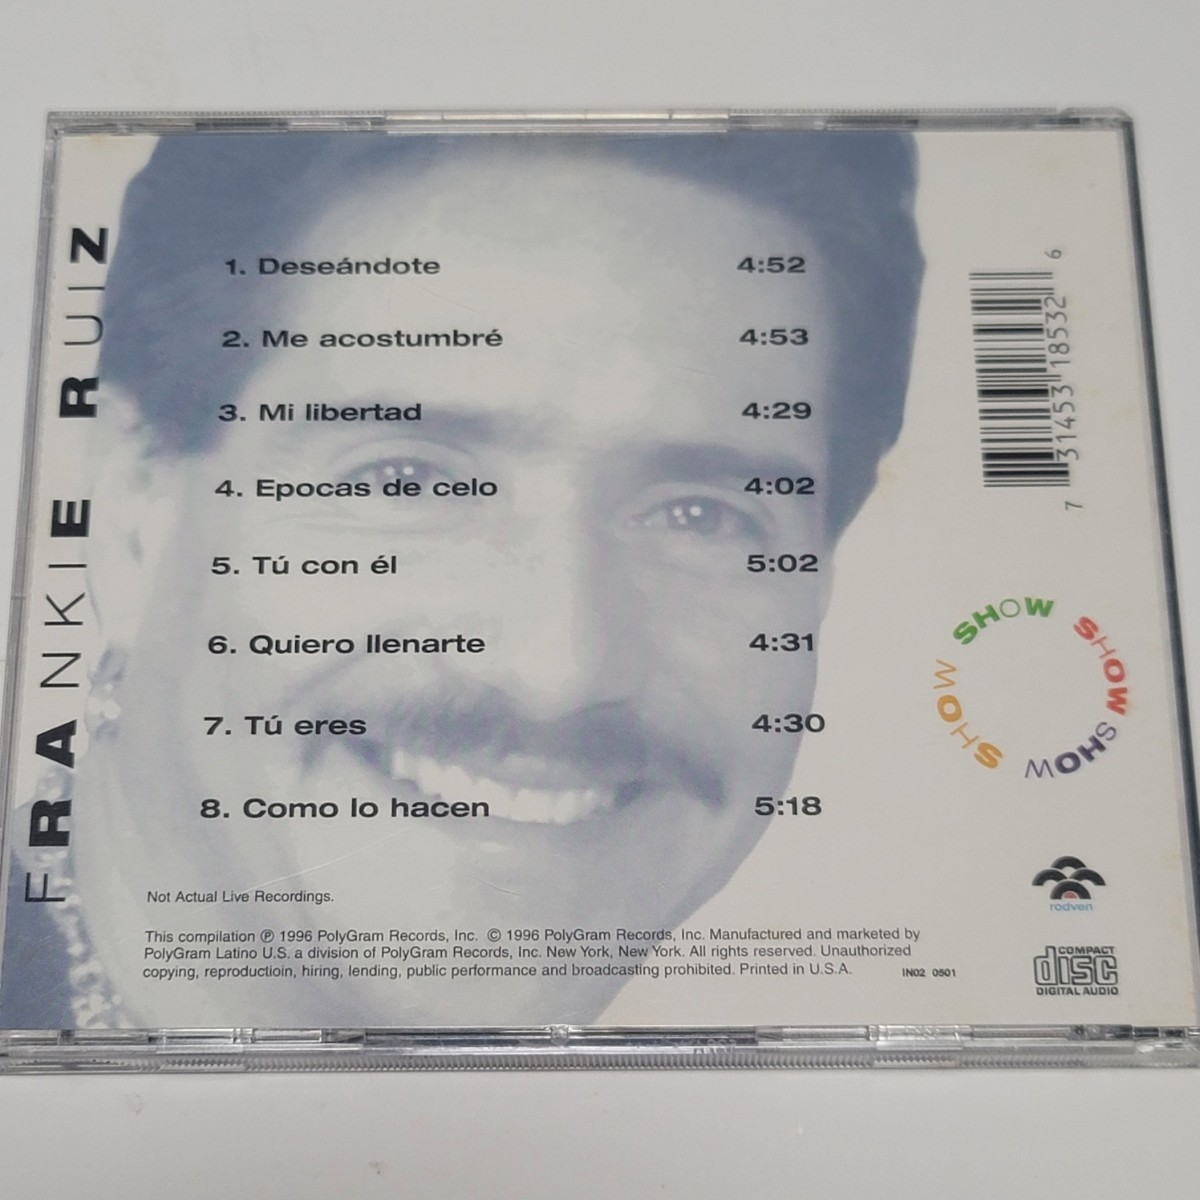 《送料込み》CD US盤 フランキー・ルイス Frankie Ruiz 「SHOW」アルバム 8曲収録 サルサ_画像3